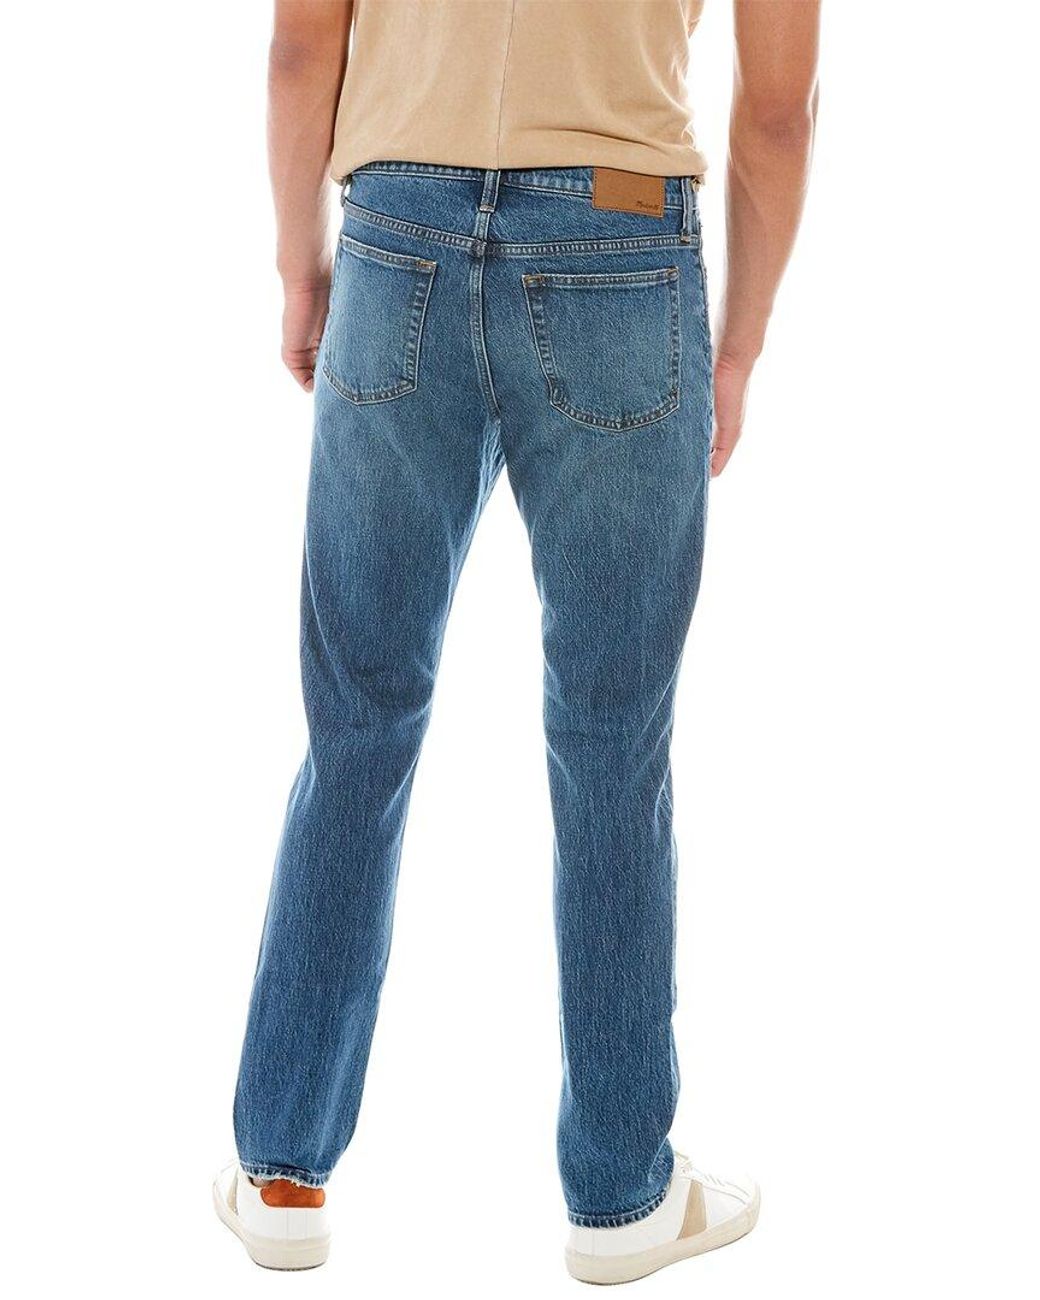 Athletic Slim Jeans in Maxdale Wash